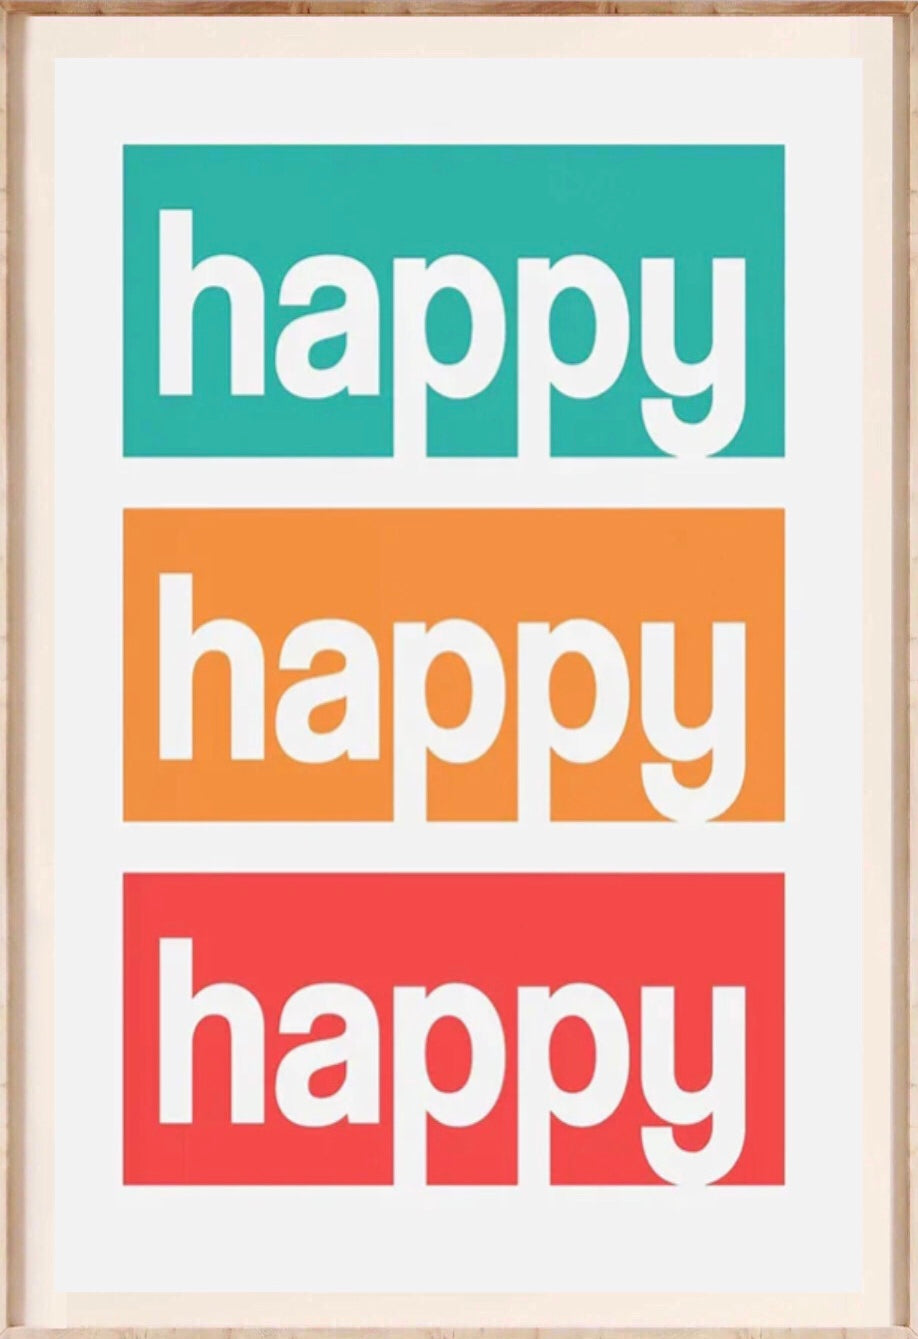 " happy , happy , happy " poster